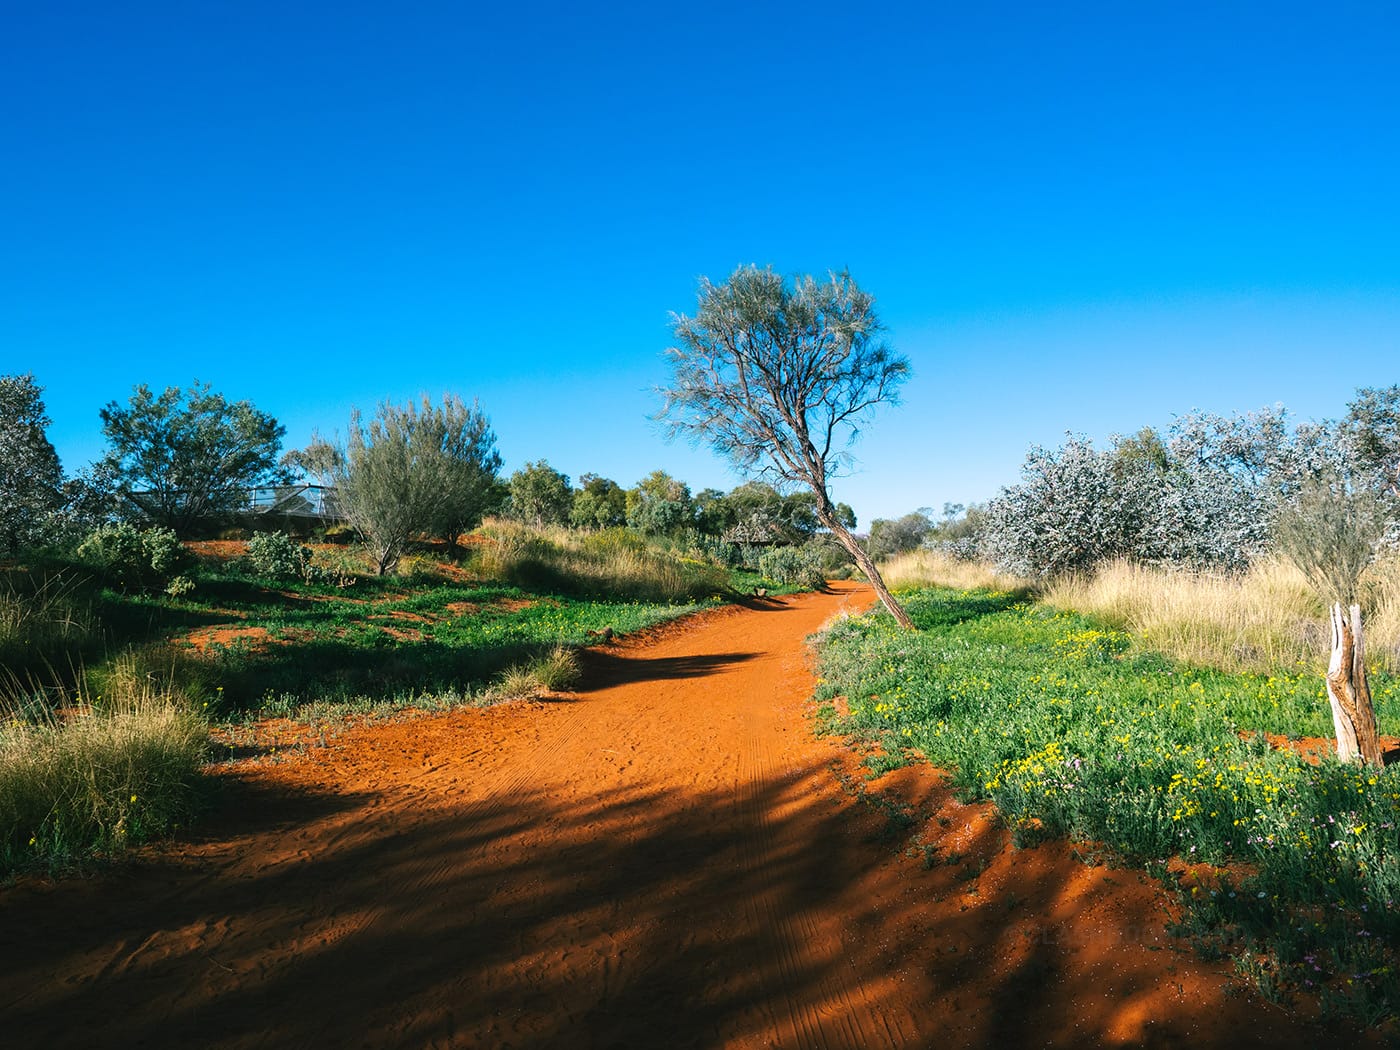 NT Australia - Alice Springs Desert Park - The amazing colors in desert park